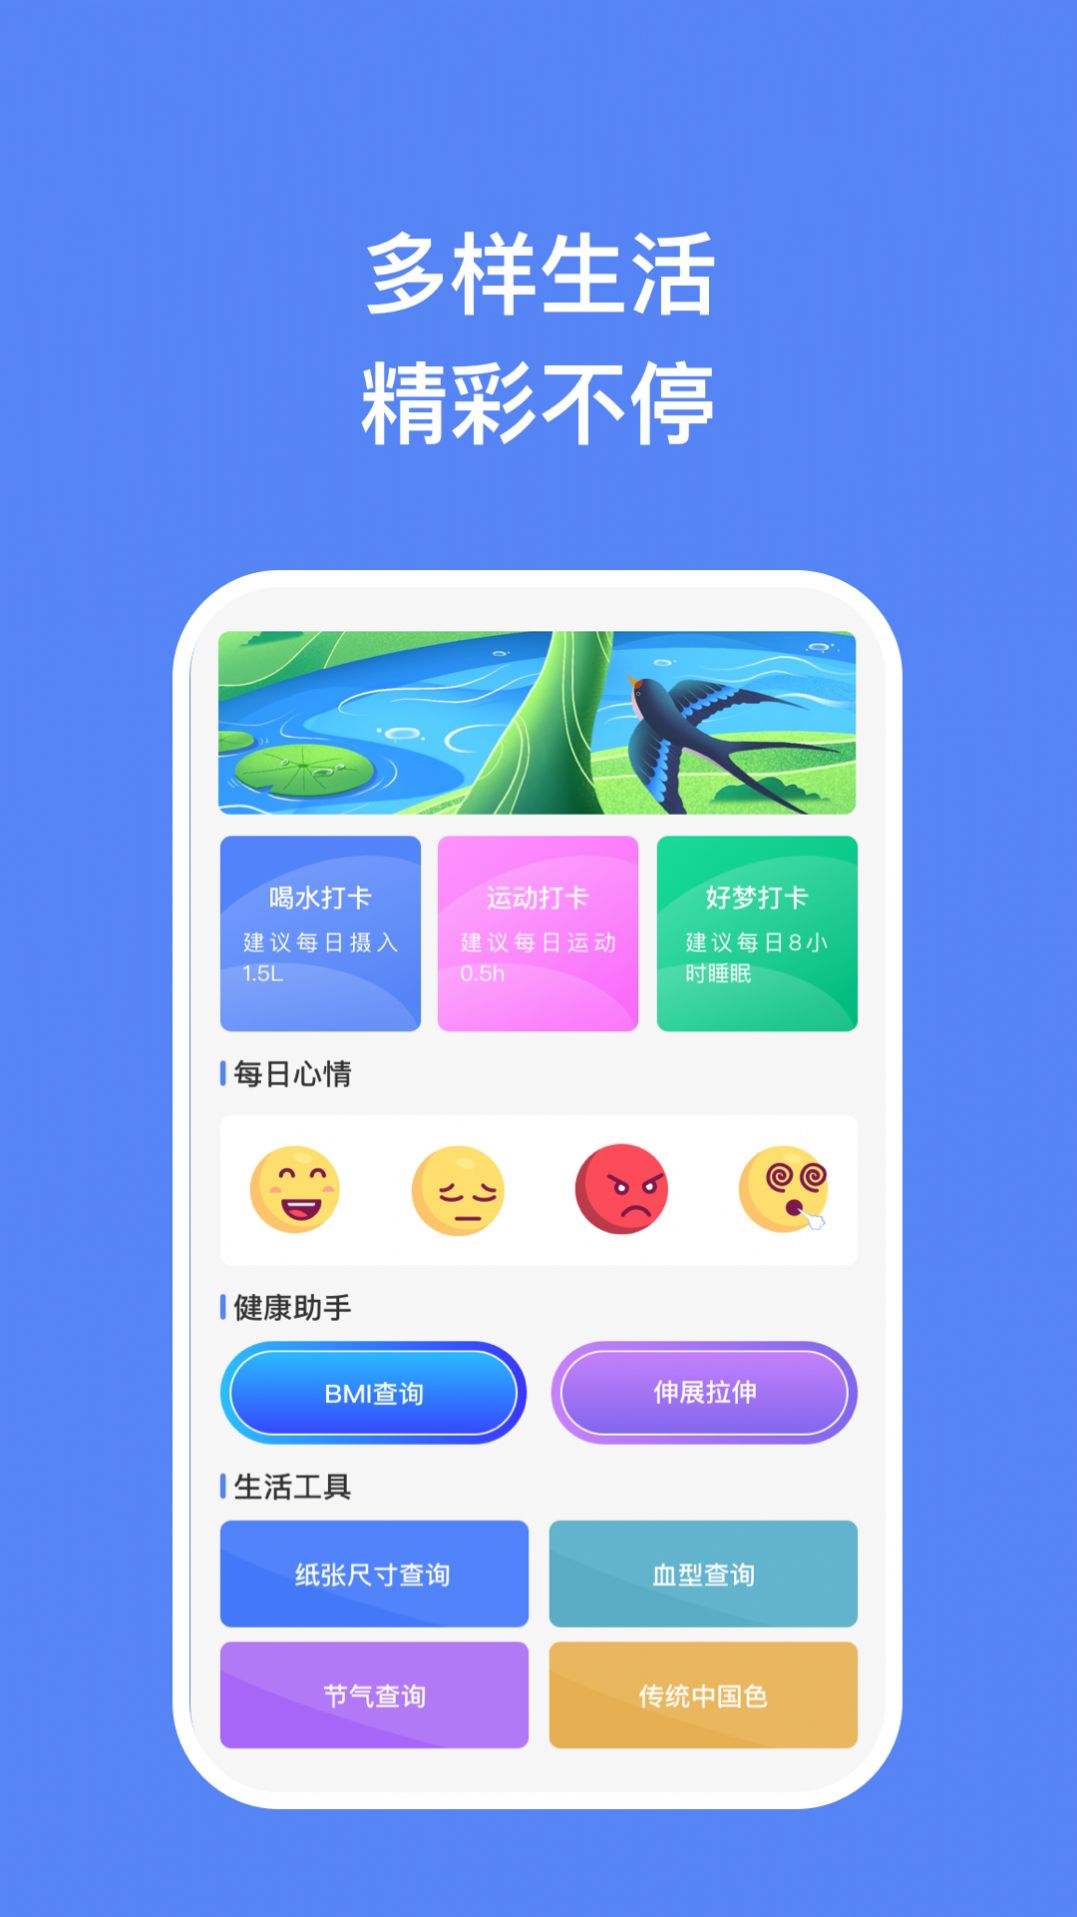 飞腾手机助手下载app官方版 v1.0.1